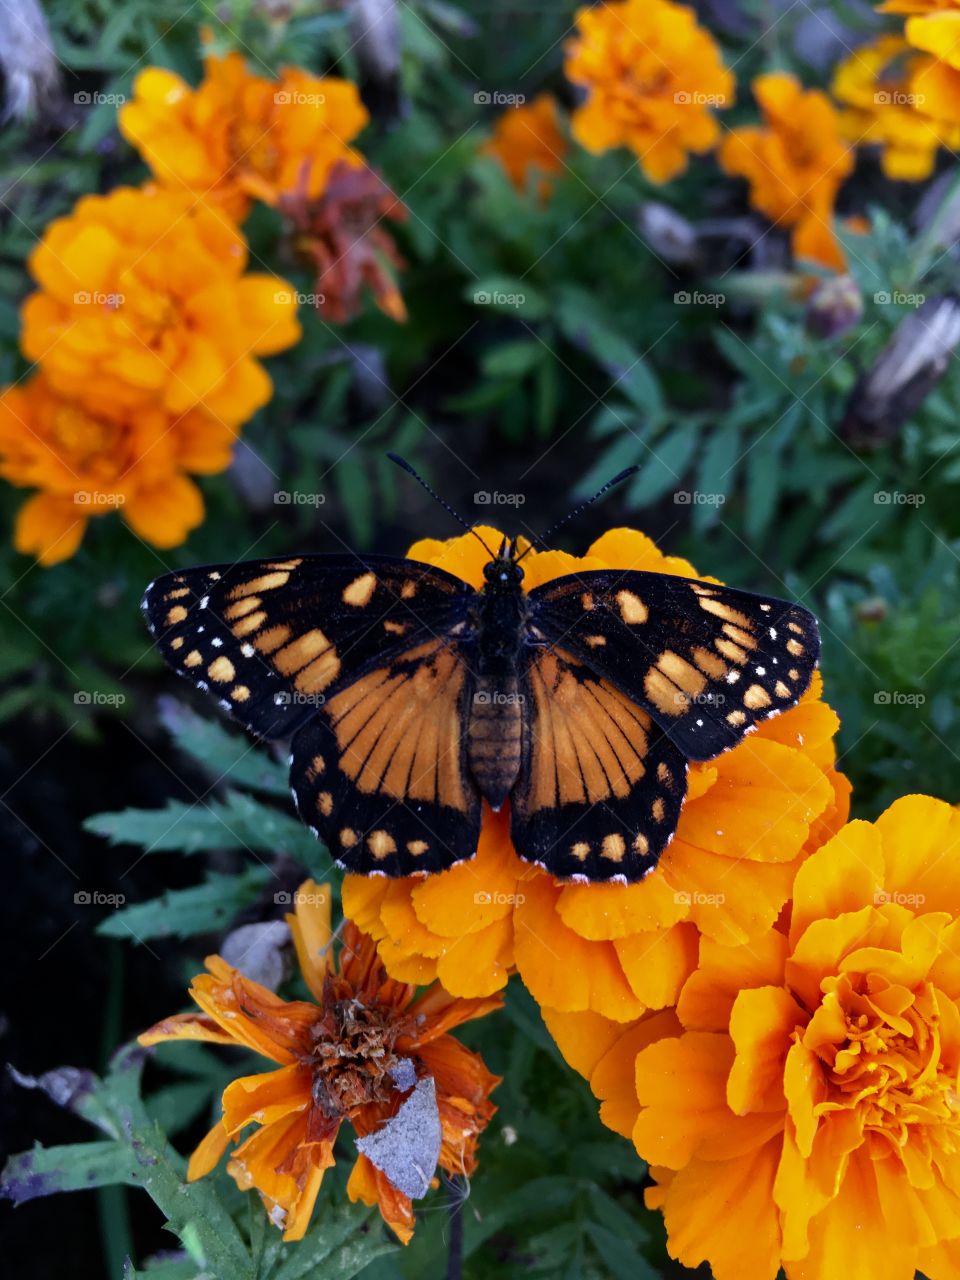 Flores do nosso jardim!
Essa borboleta cor Laranja pousou na Flor e fez pose. 
Com pétalas amarelas e vermelhas, provavelmente escolheu as da sua mesma cor para se camuflar. 
Viva a natureza!